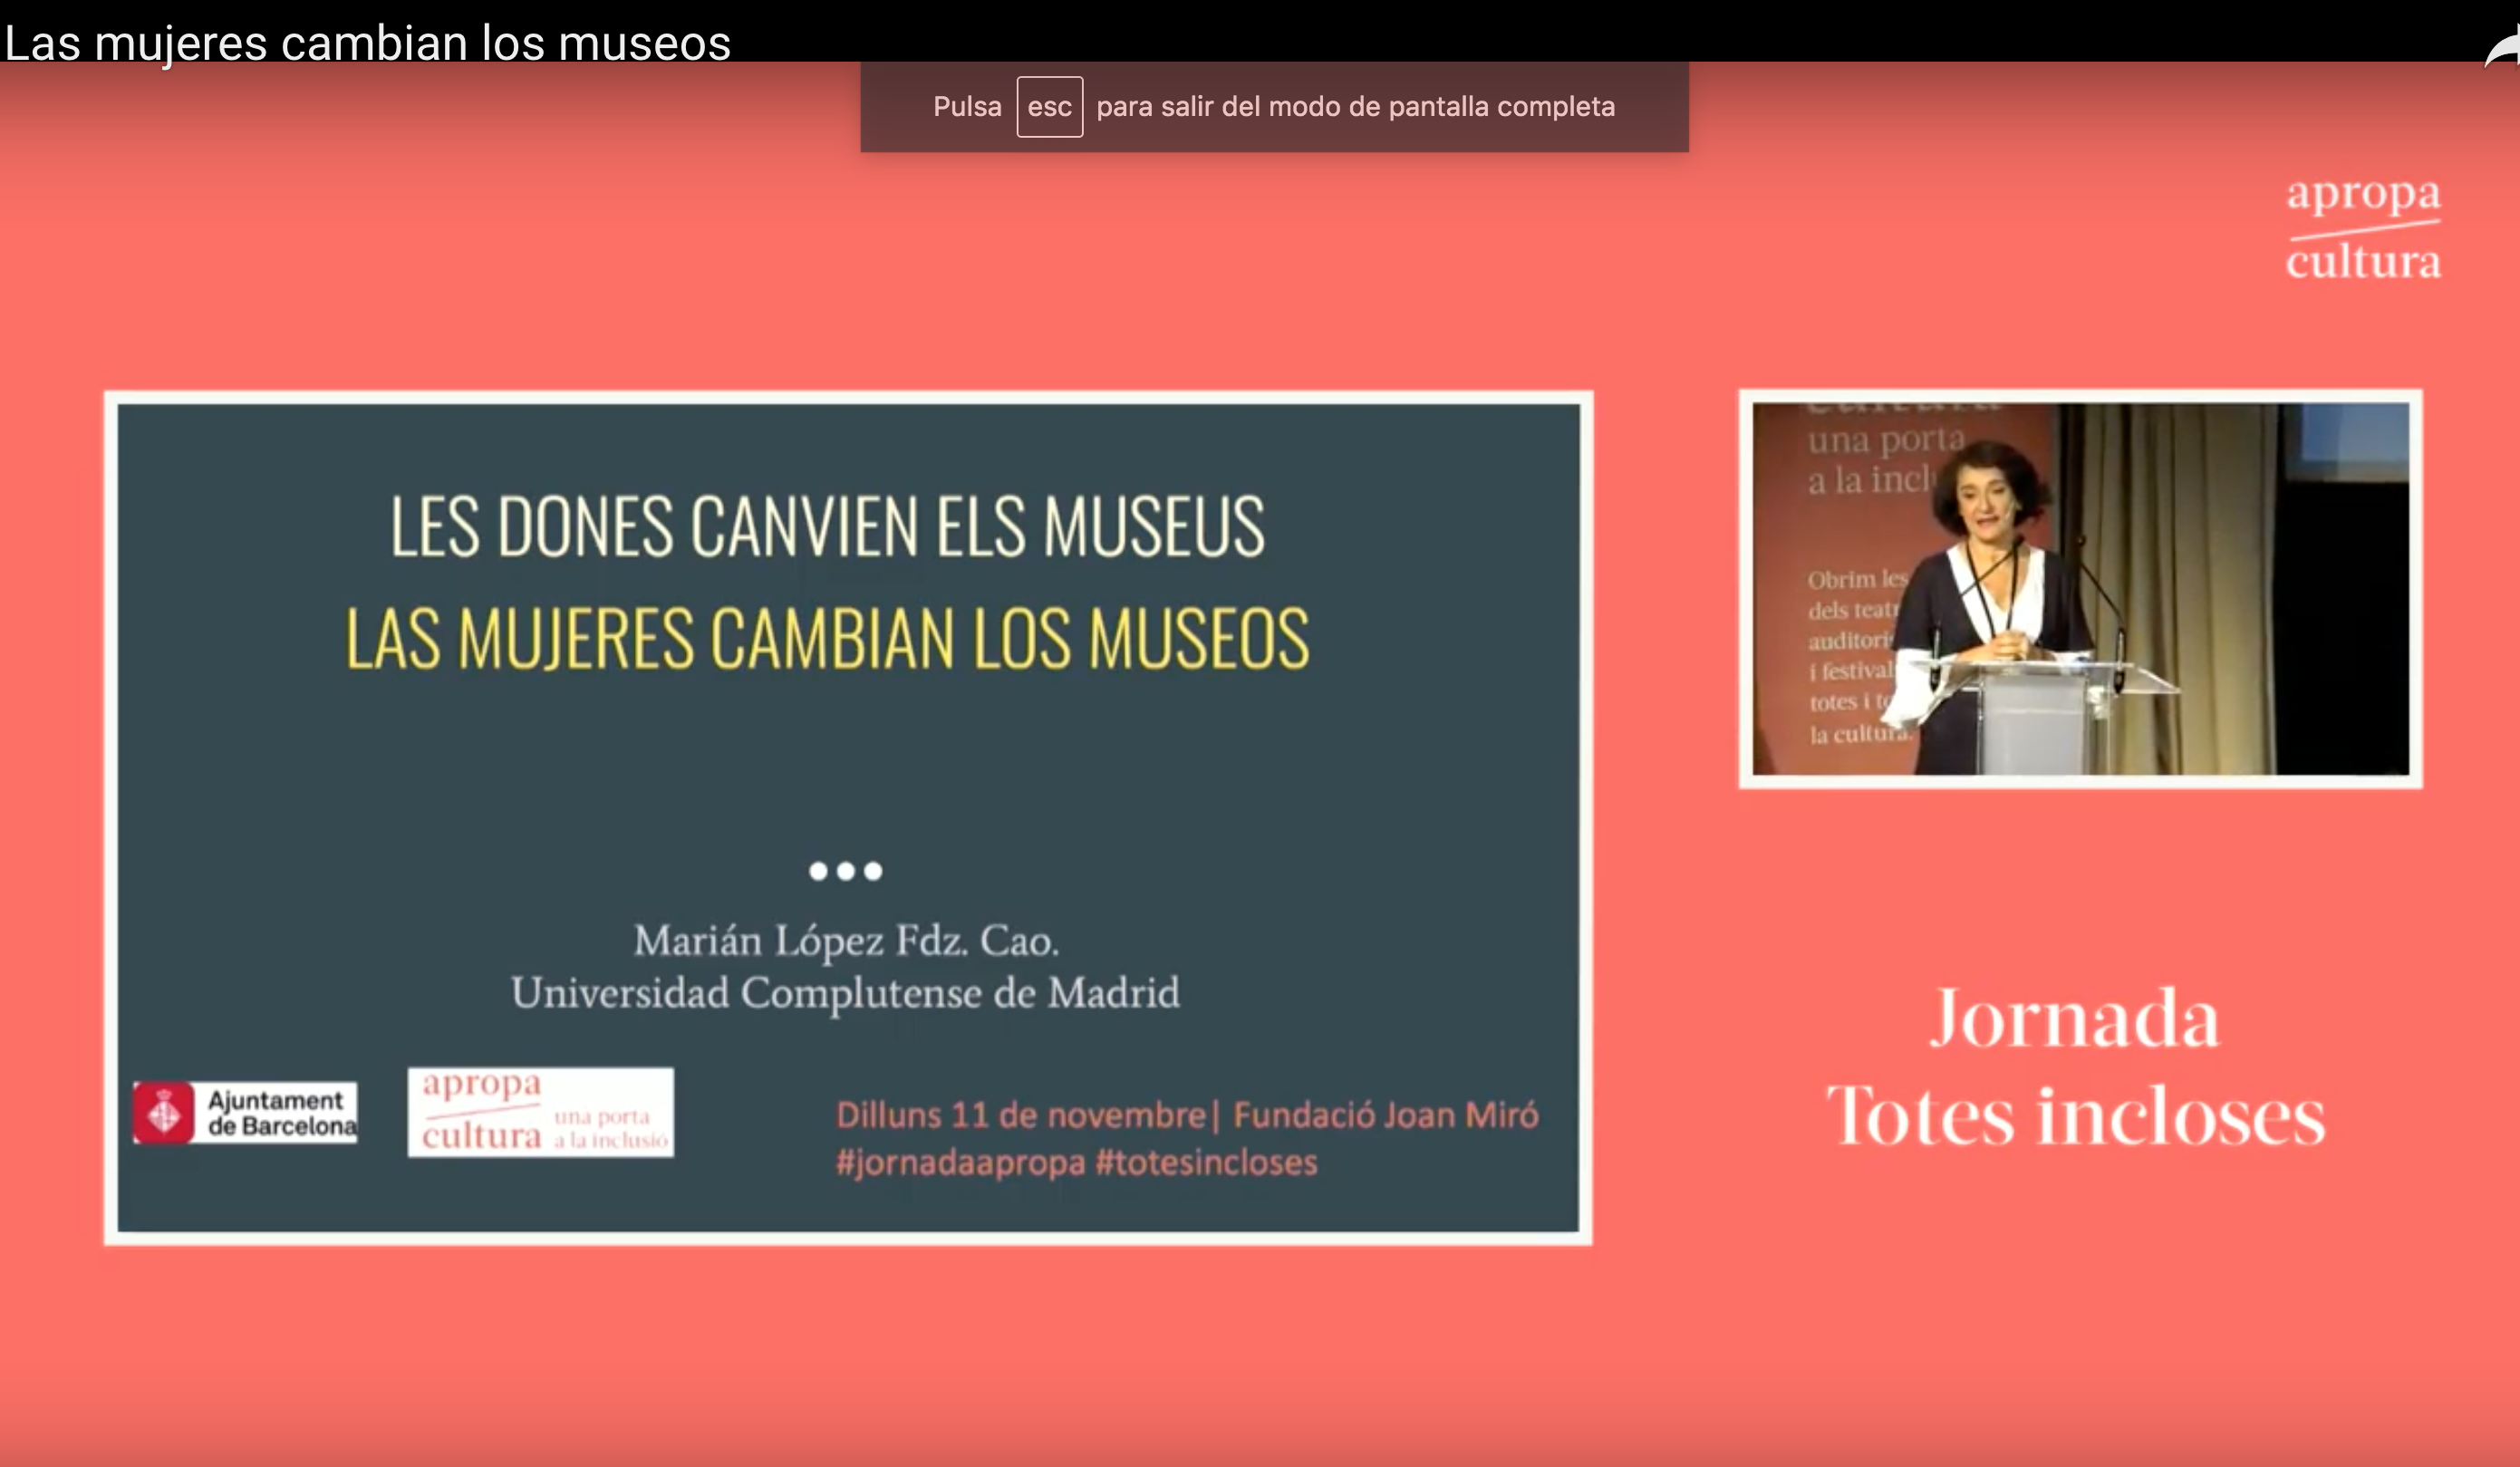 Presentación del proyecto "Las mujeres cambian los museos", en Apropa Cultura, Fundación Miró, Barcelona